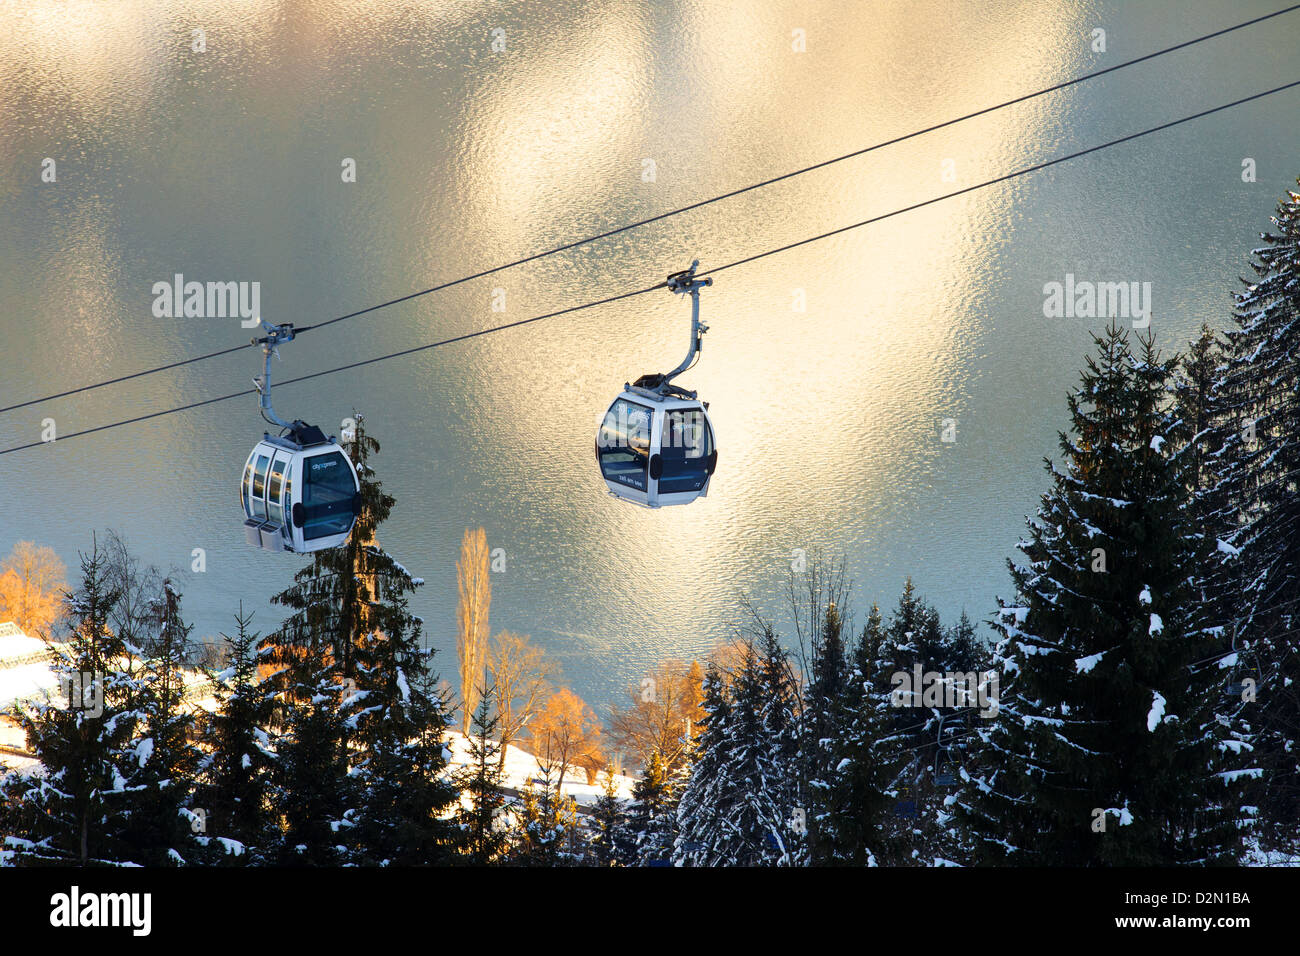 Ski lift, Zell am See, Austria Stock Photo